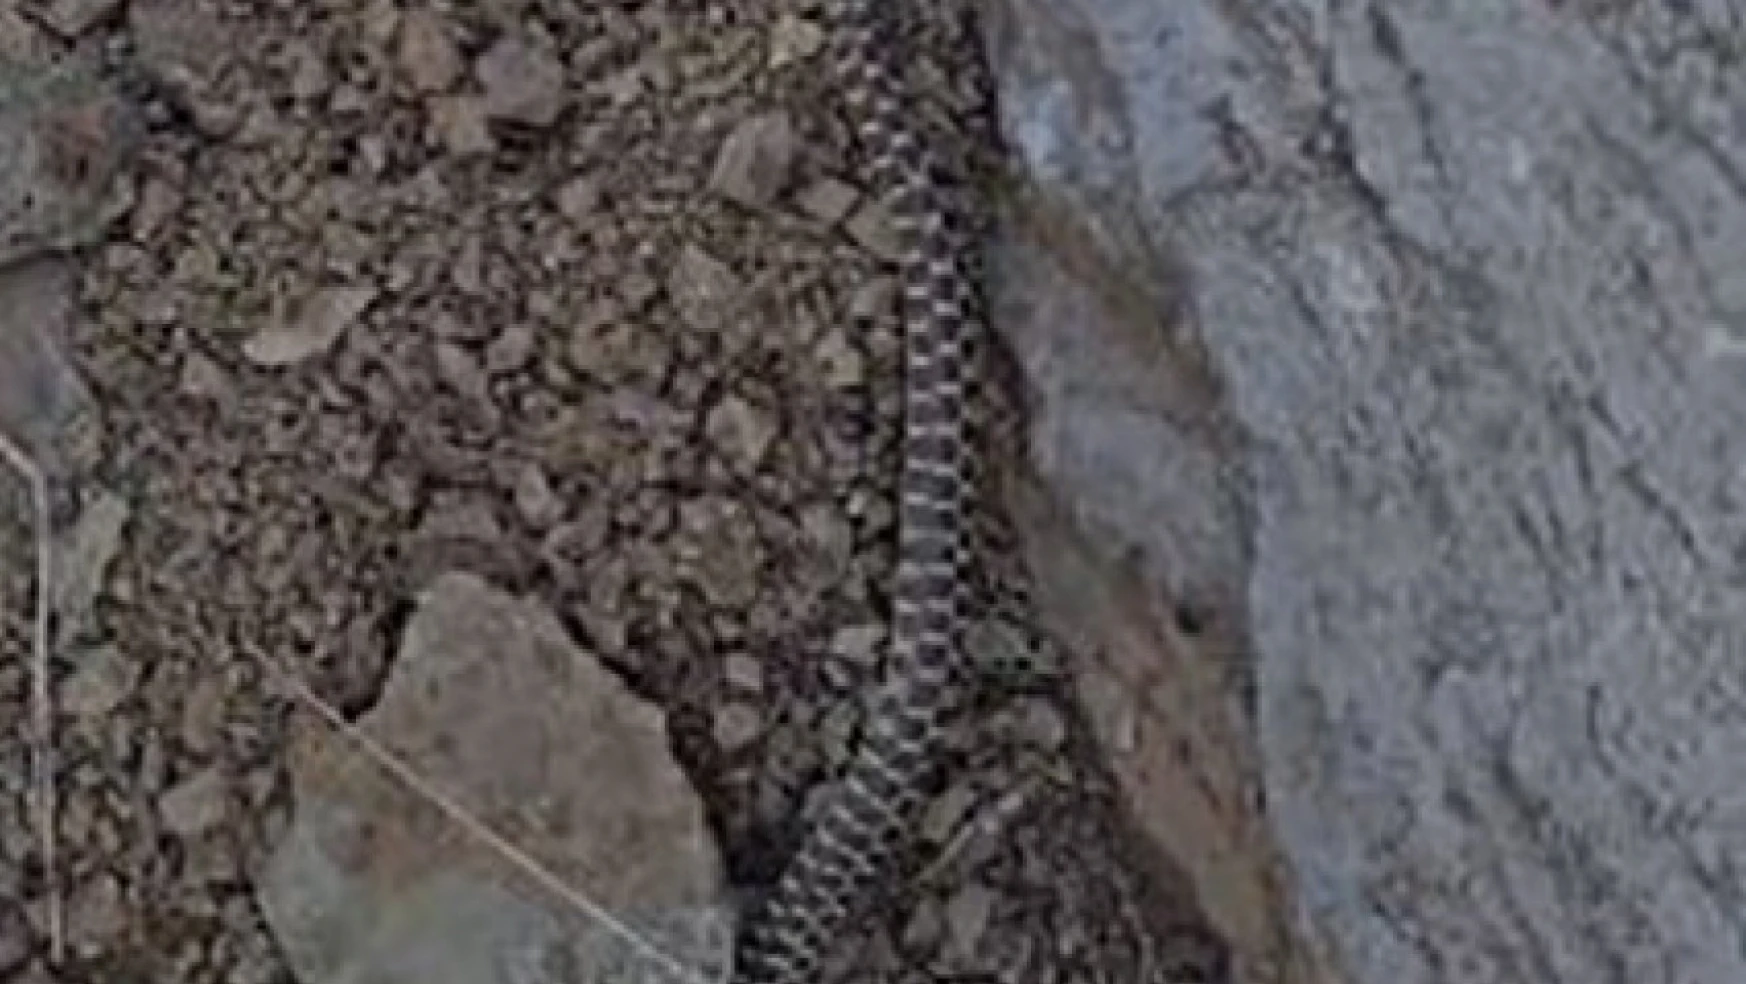 Elazığ'da zehirli kocabaş yılanı görüntülendi